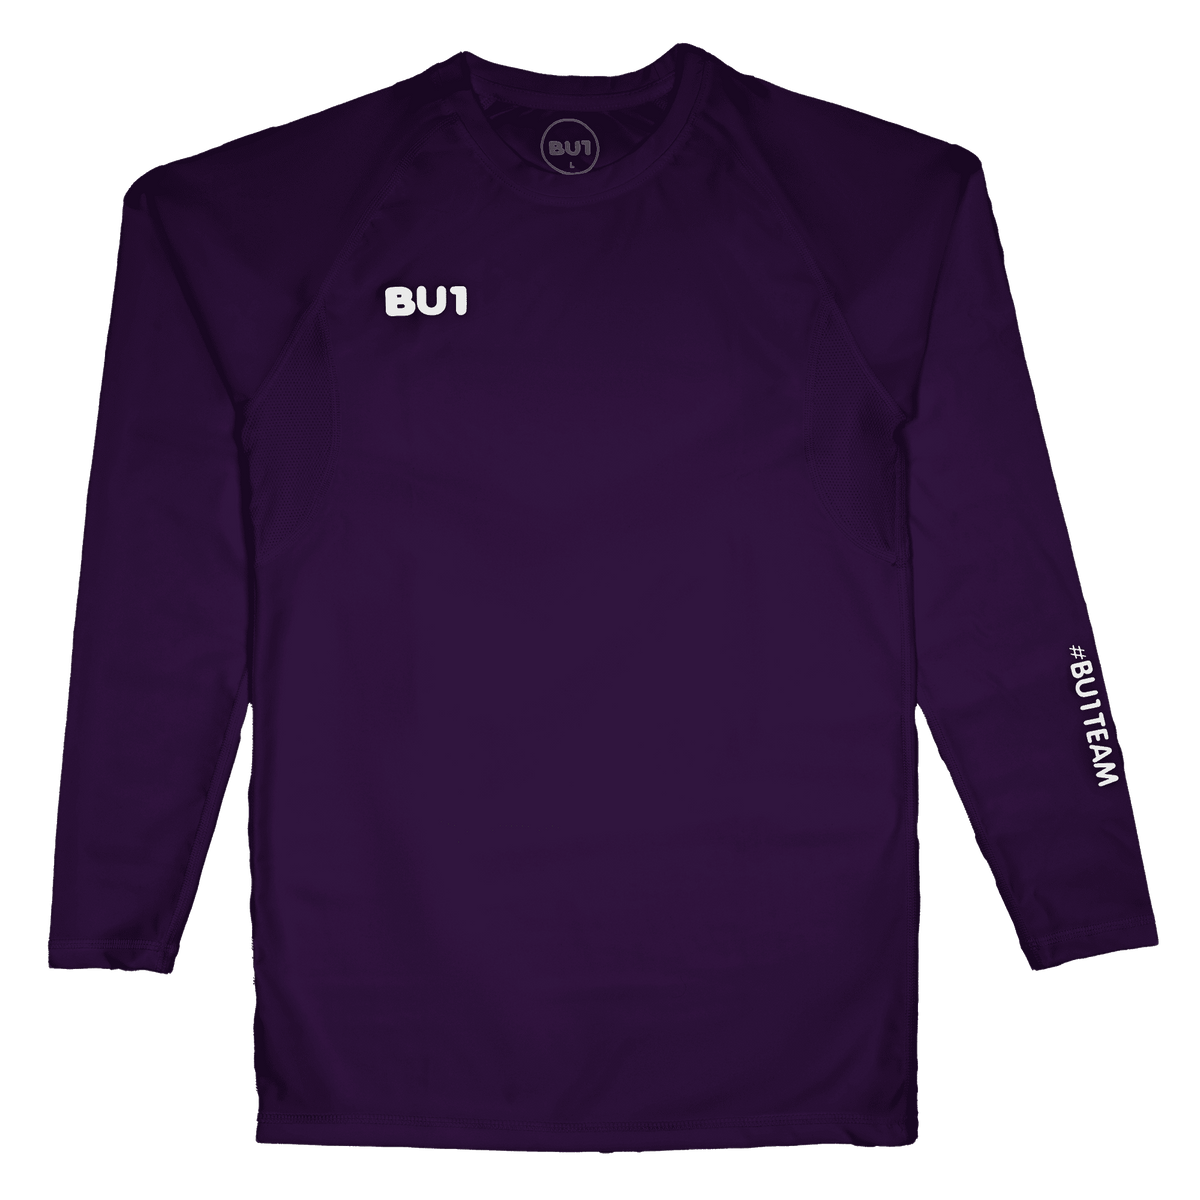 Camiseta de compresión BU1 violeta